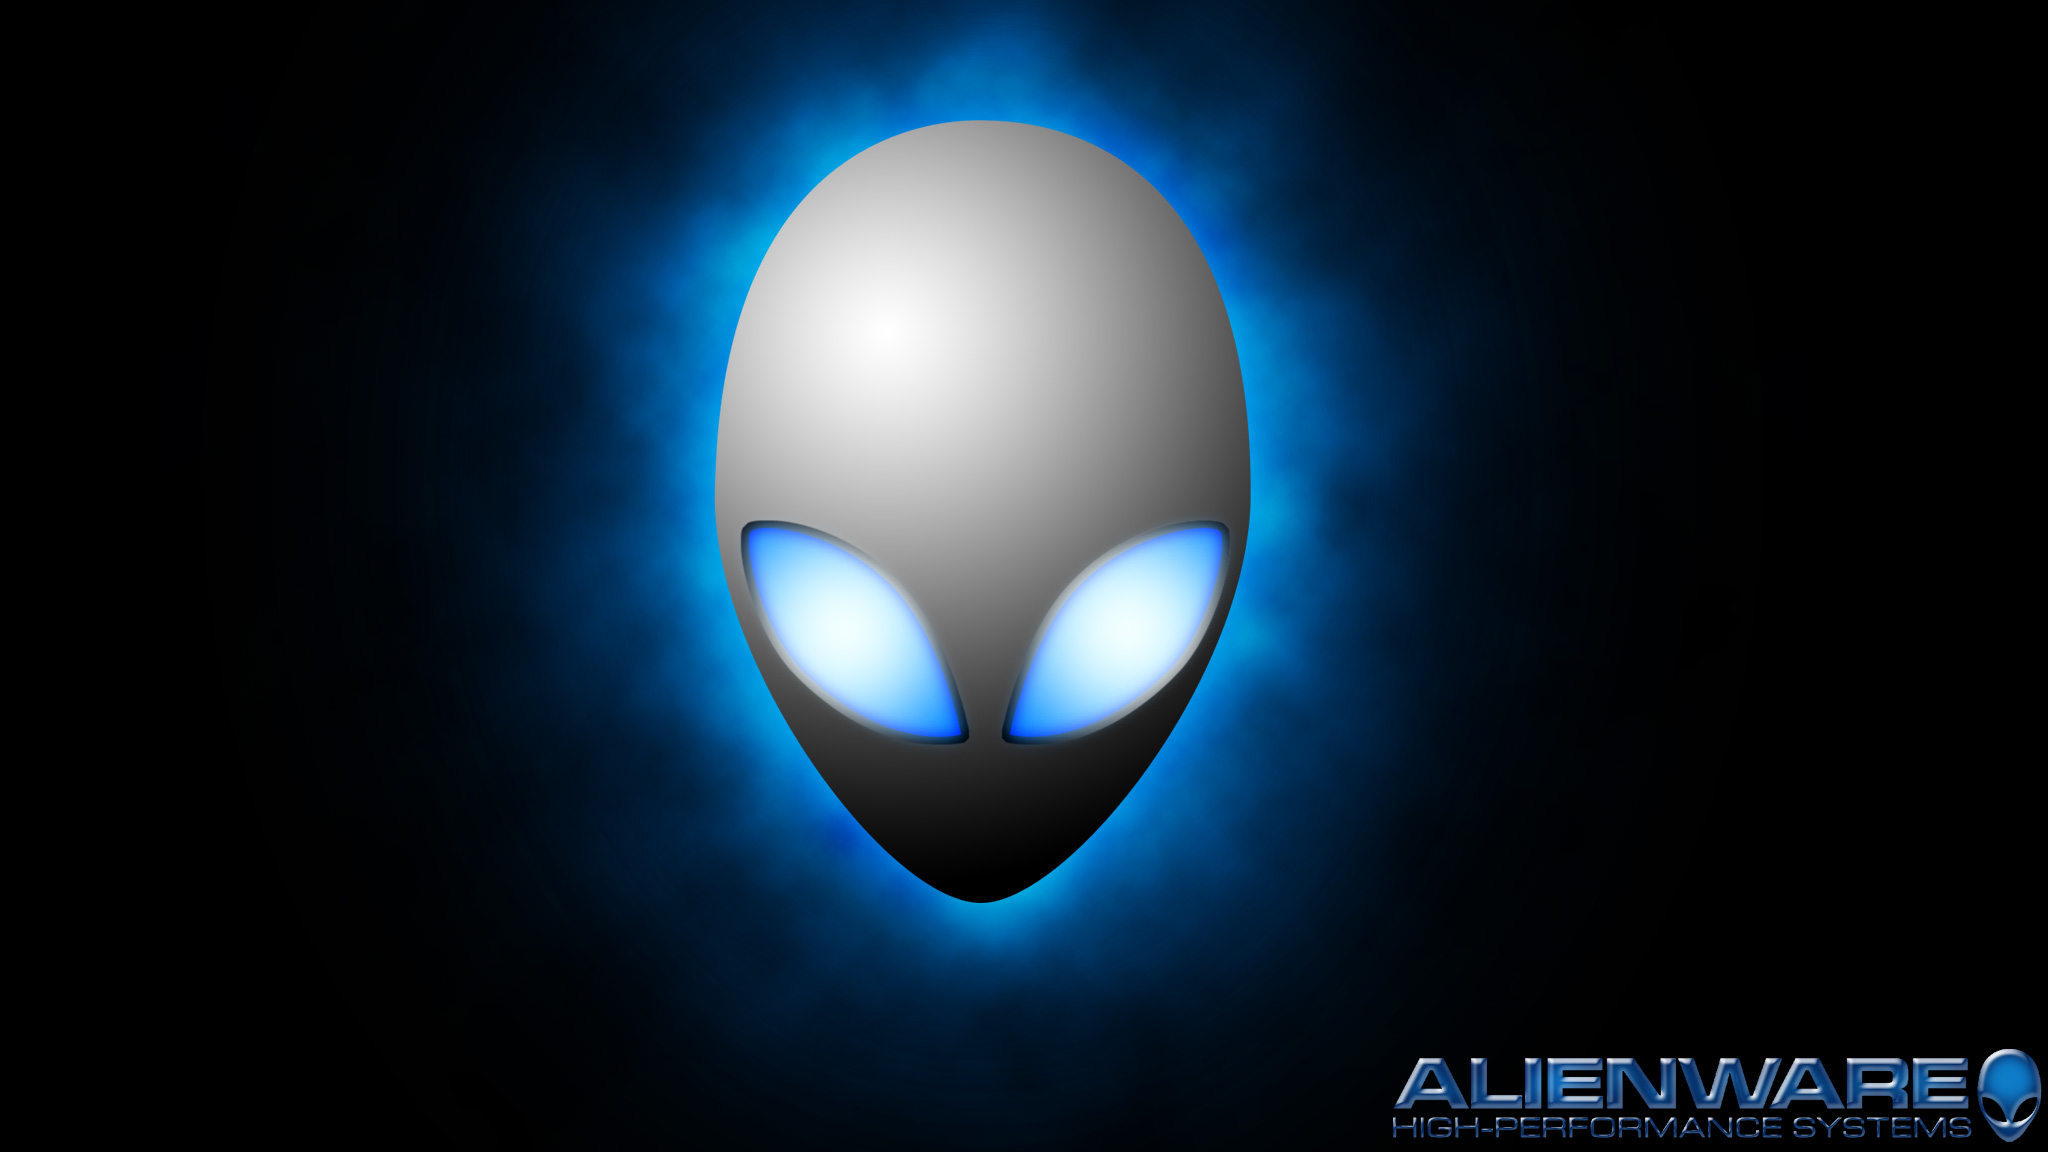 Alienware, advertisement, Aliens - desktop wallpaper